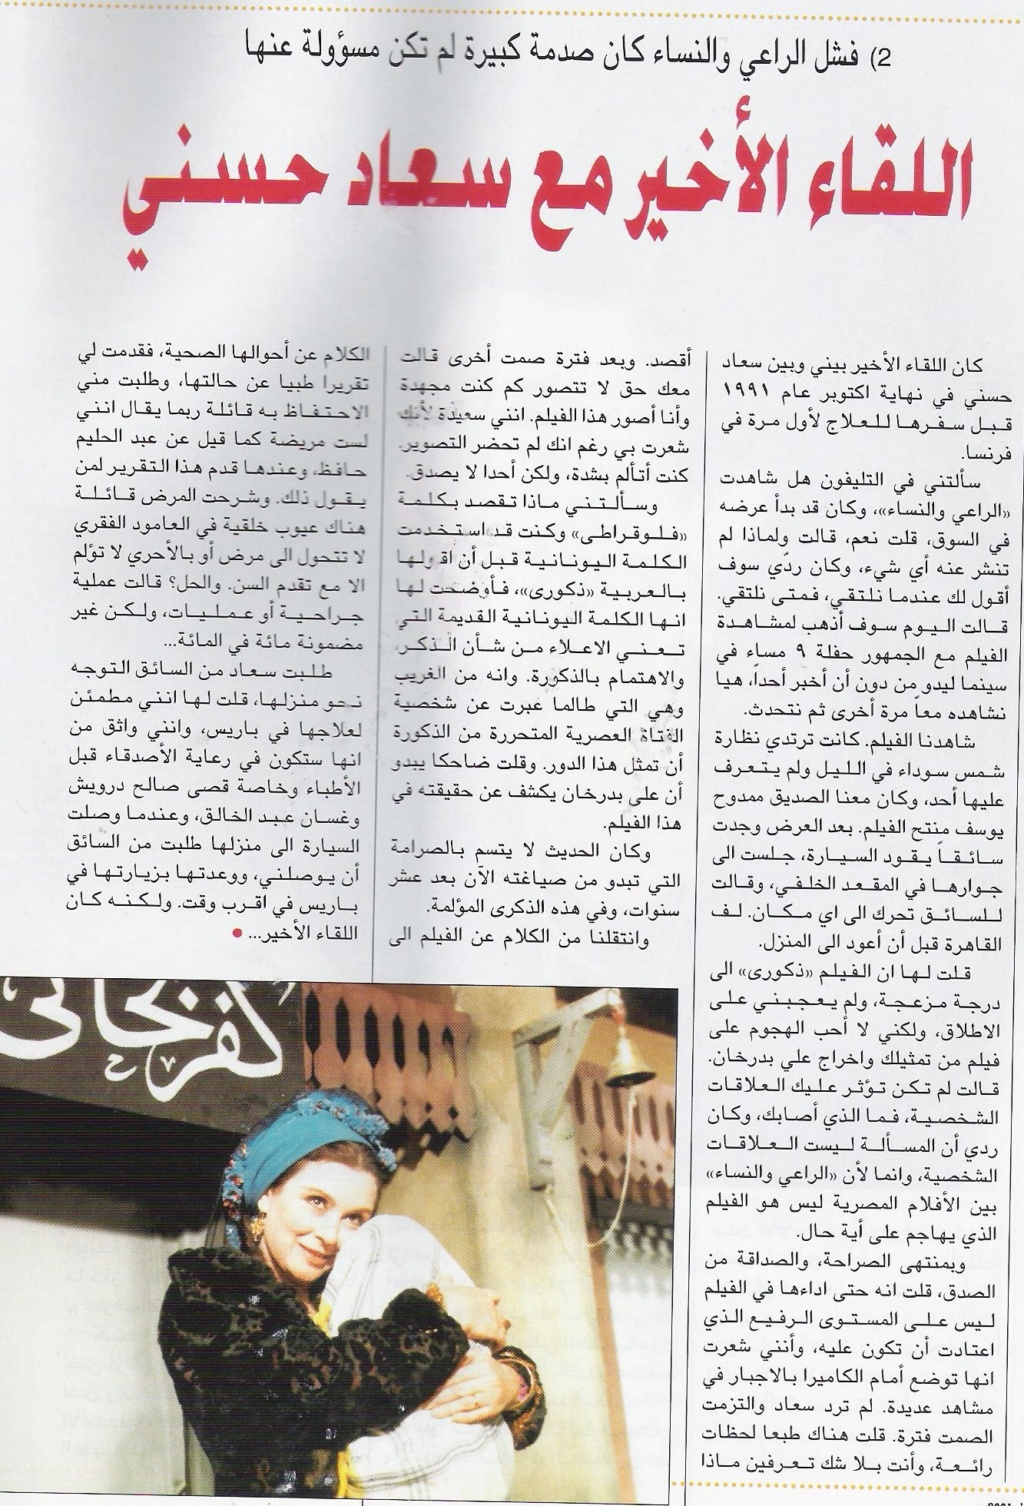 1991 - مقال صحفي : اللقاء الأخير مع سعاد حسني 1991 م Aaae_a10